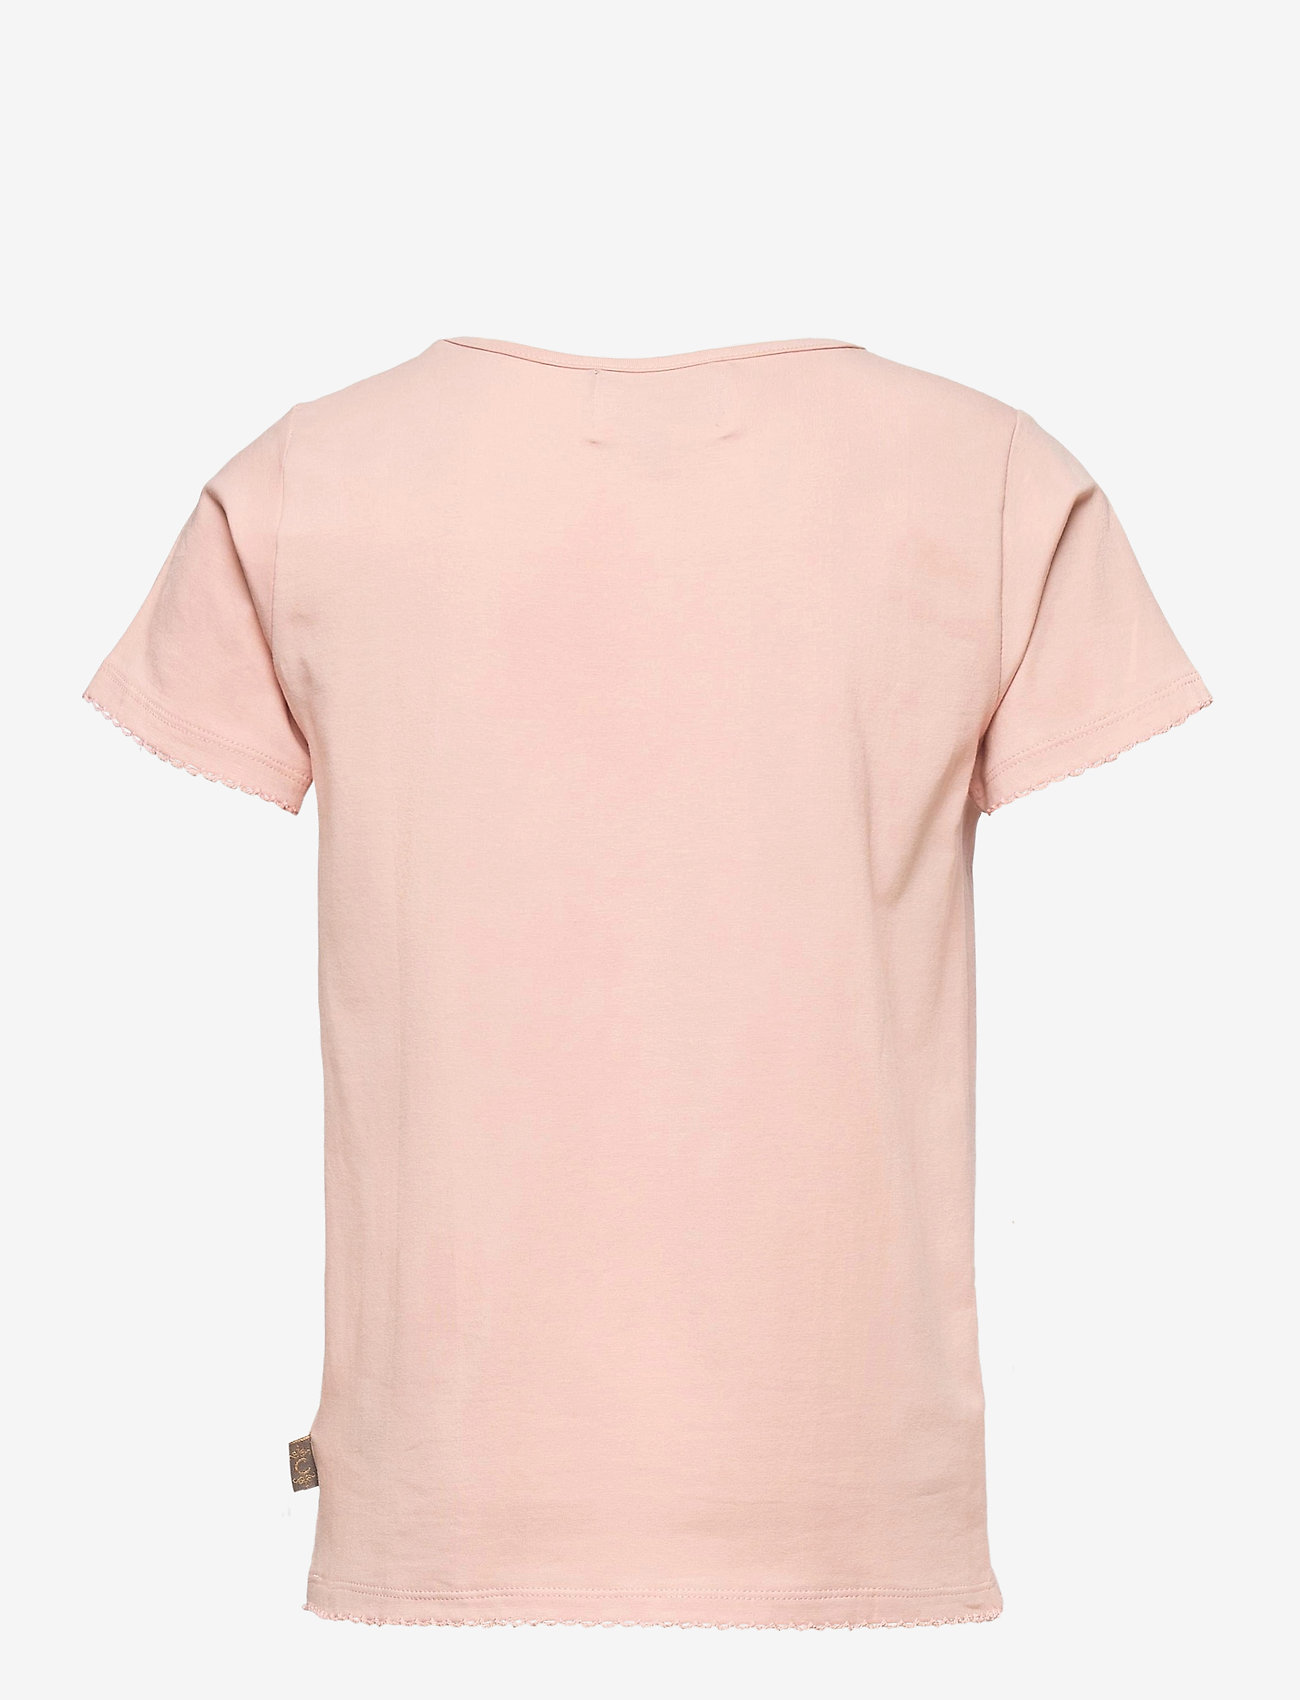 Creamie - Creamie T-shirt SS - korte mouwen - rose smoke - 1